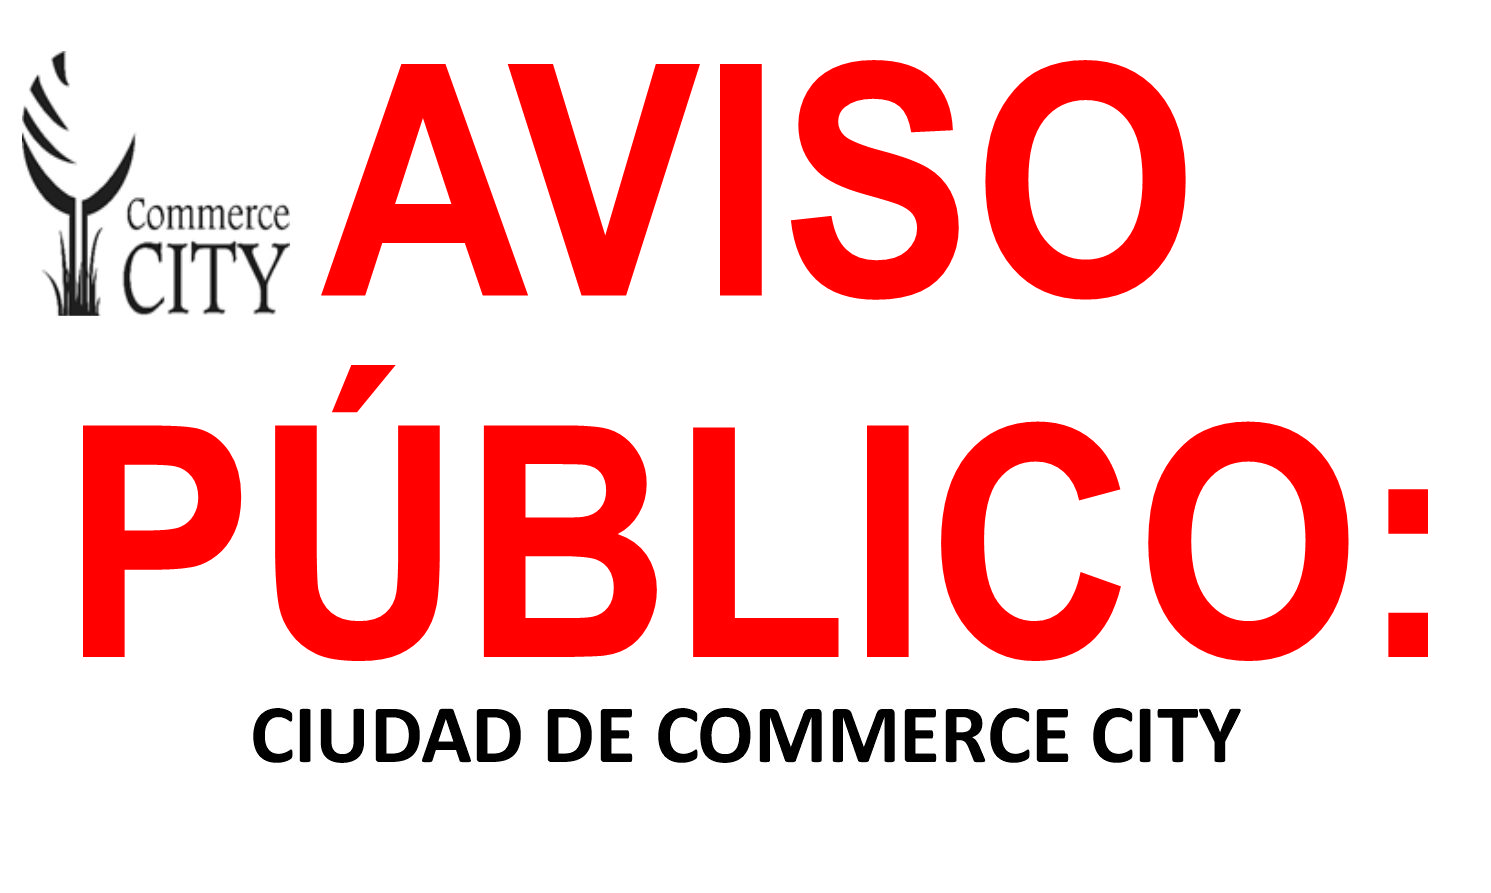 AVISO PÚBLICO: CIUDAD DE COMMERCE CITY